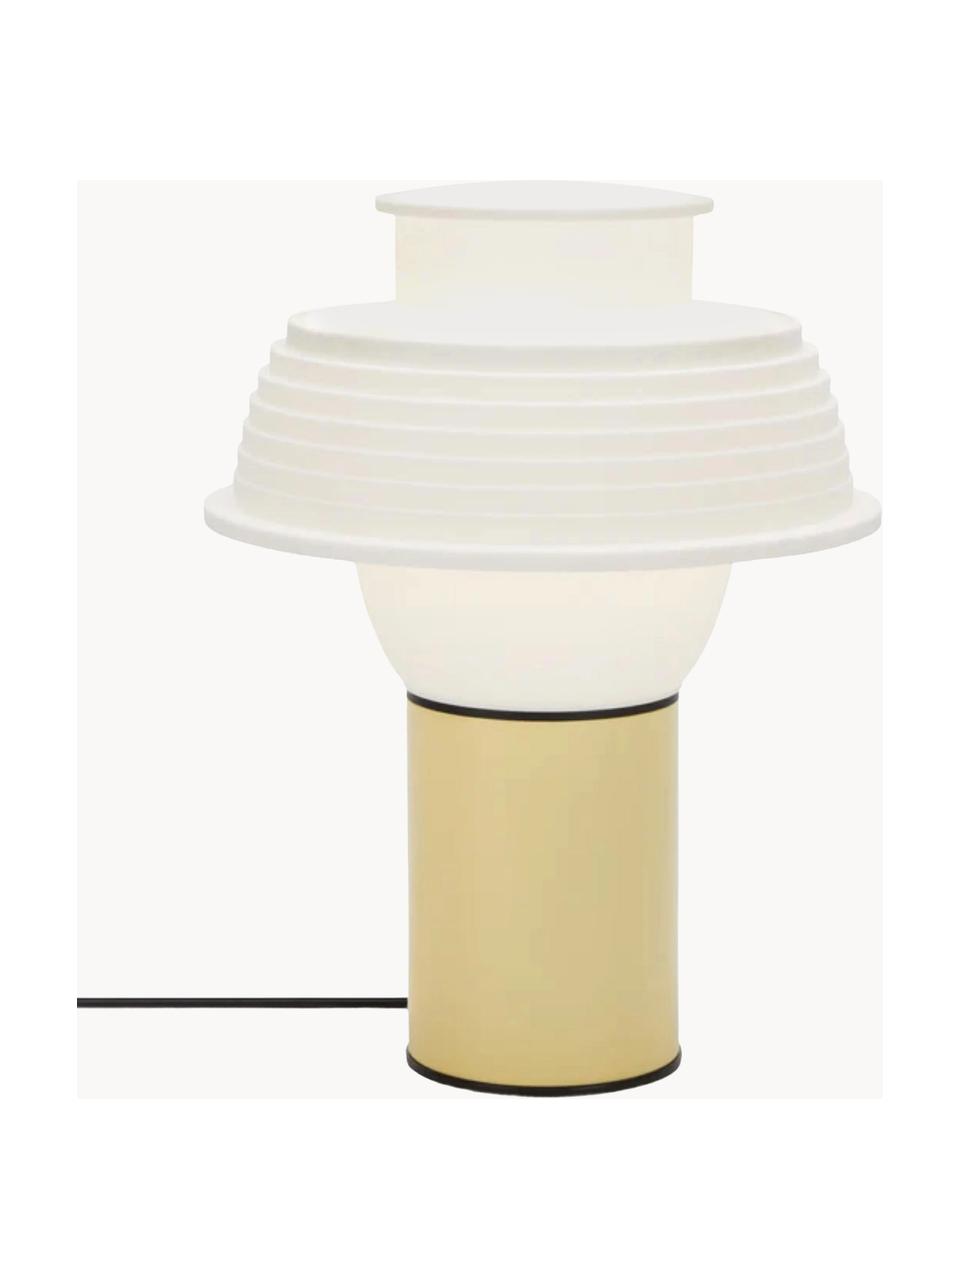 Kleine Tischlampe TL2, Lampenschirm: Silikon, Hellgelb, Weiß, Schwarz, Ø 22 x H 28 cm